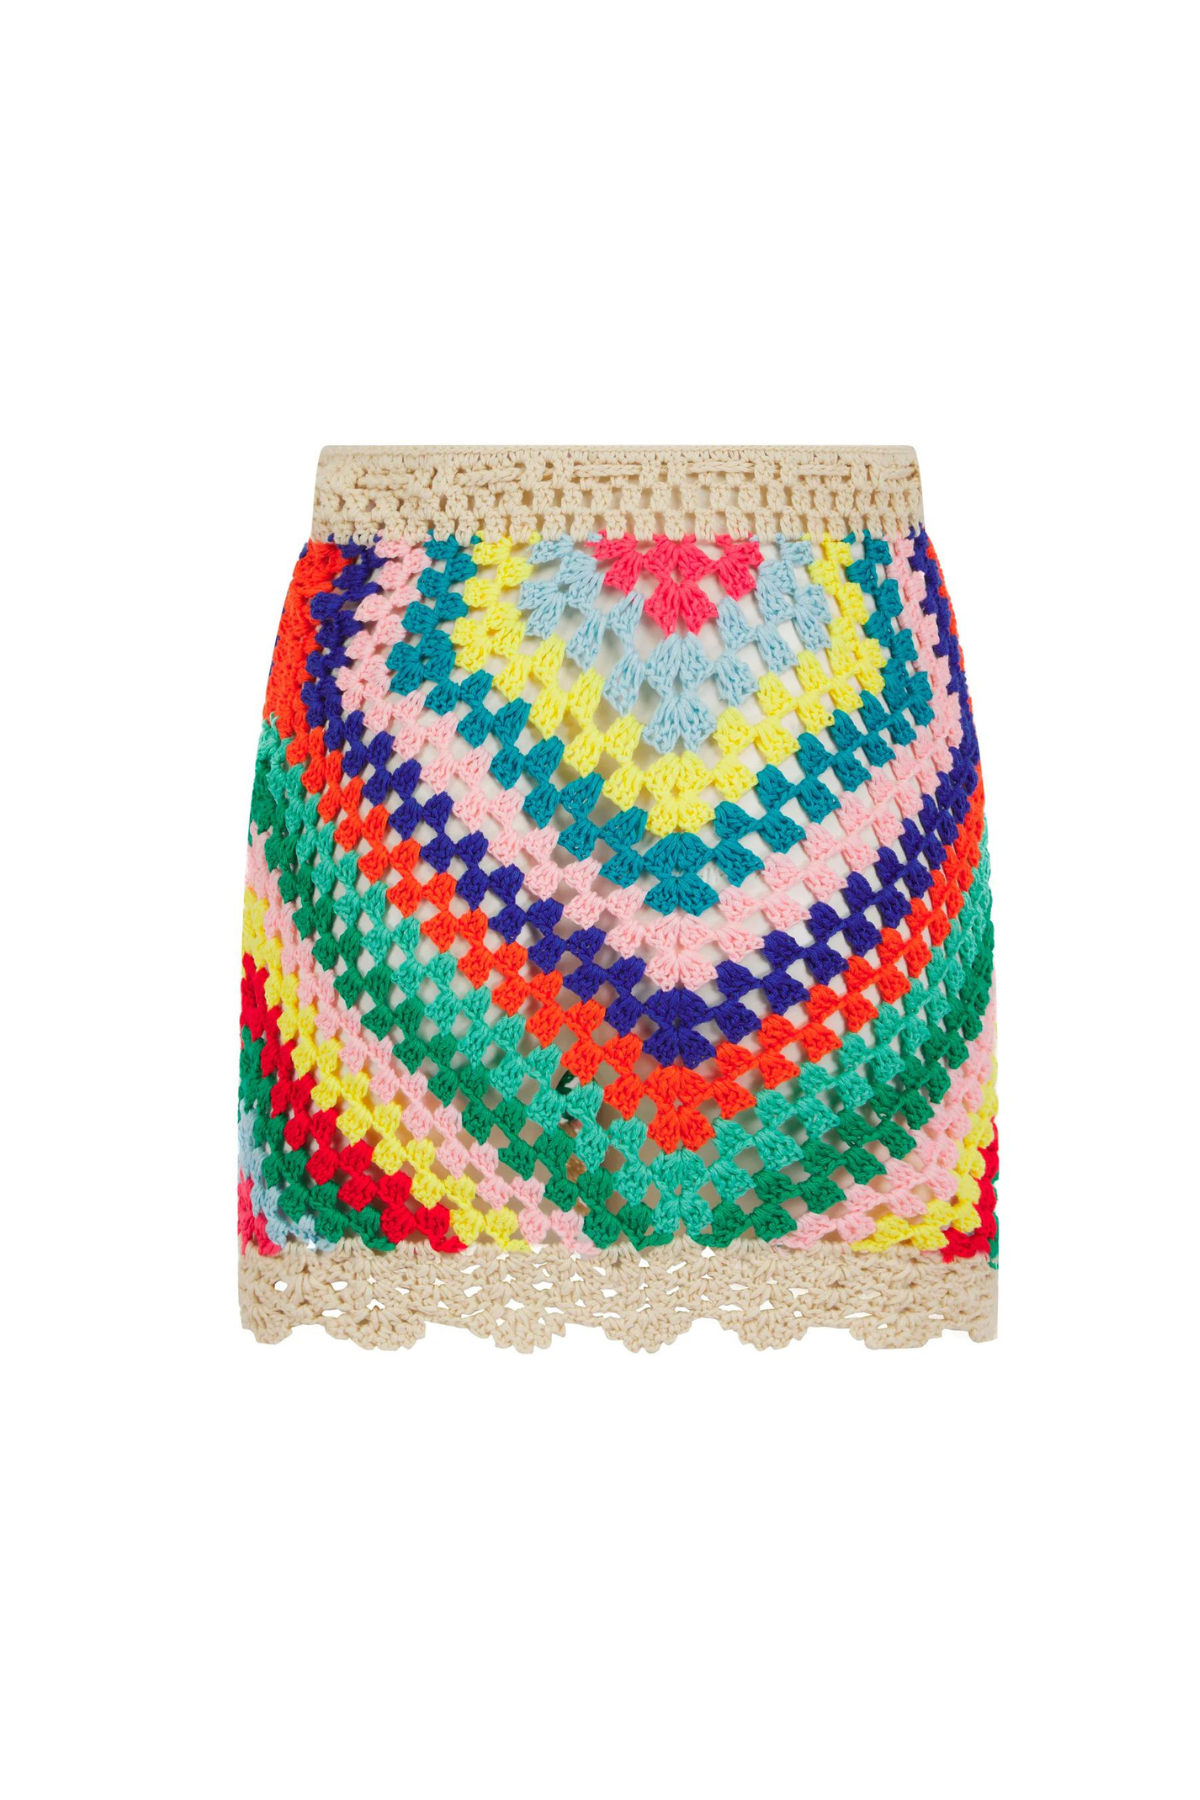 Sóller Crochet Skirt